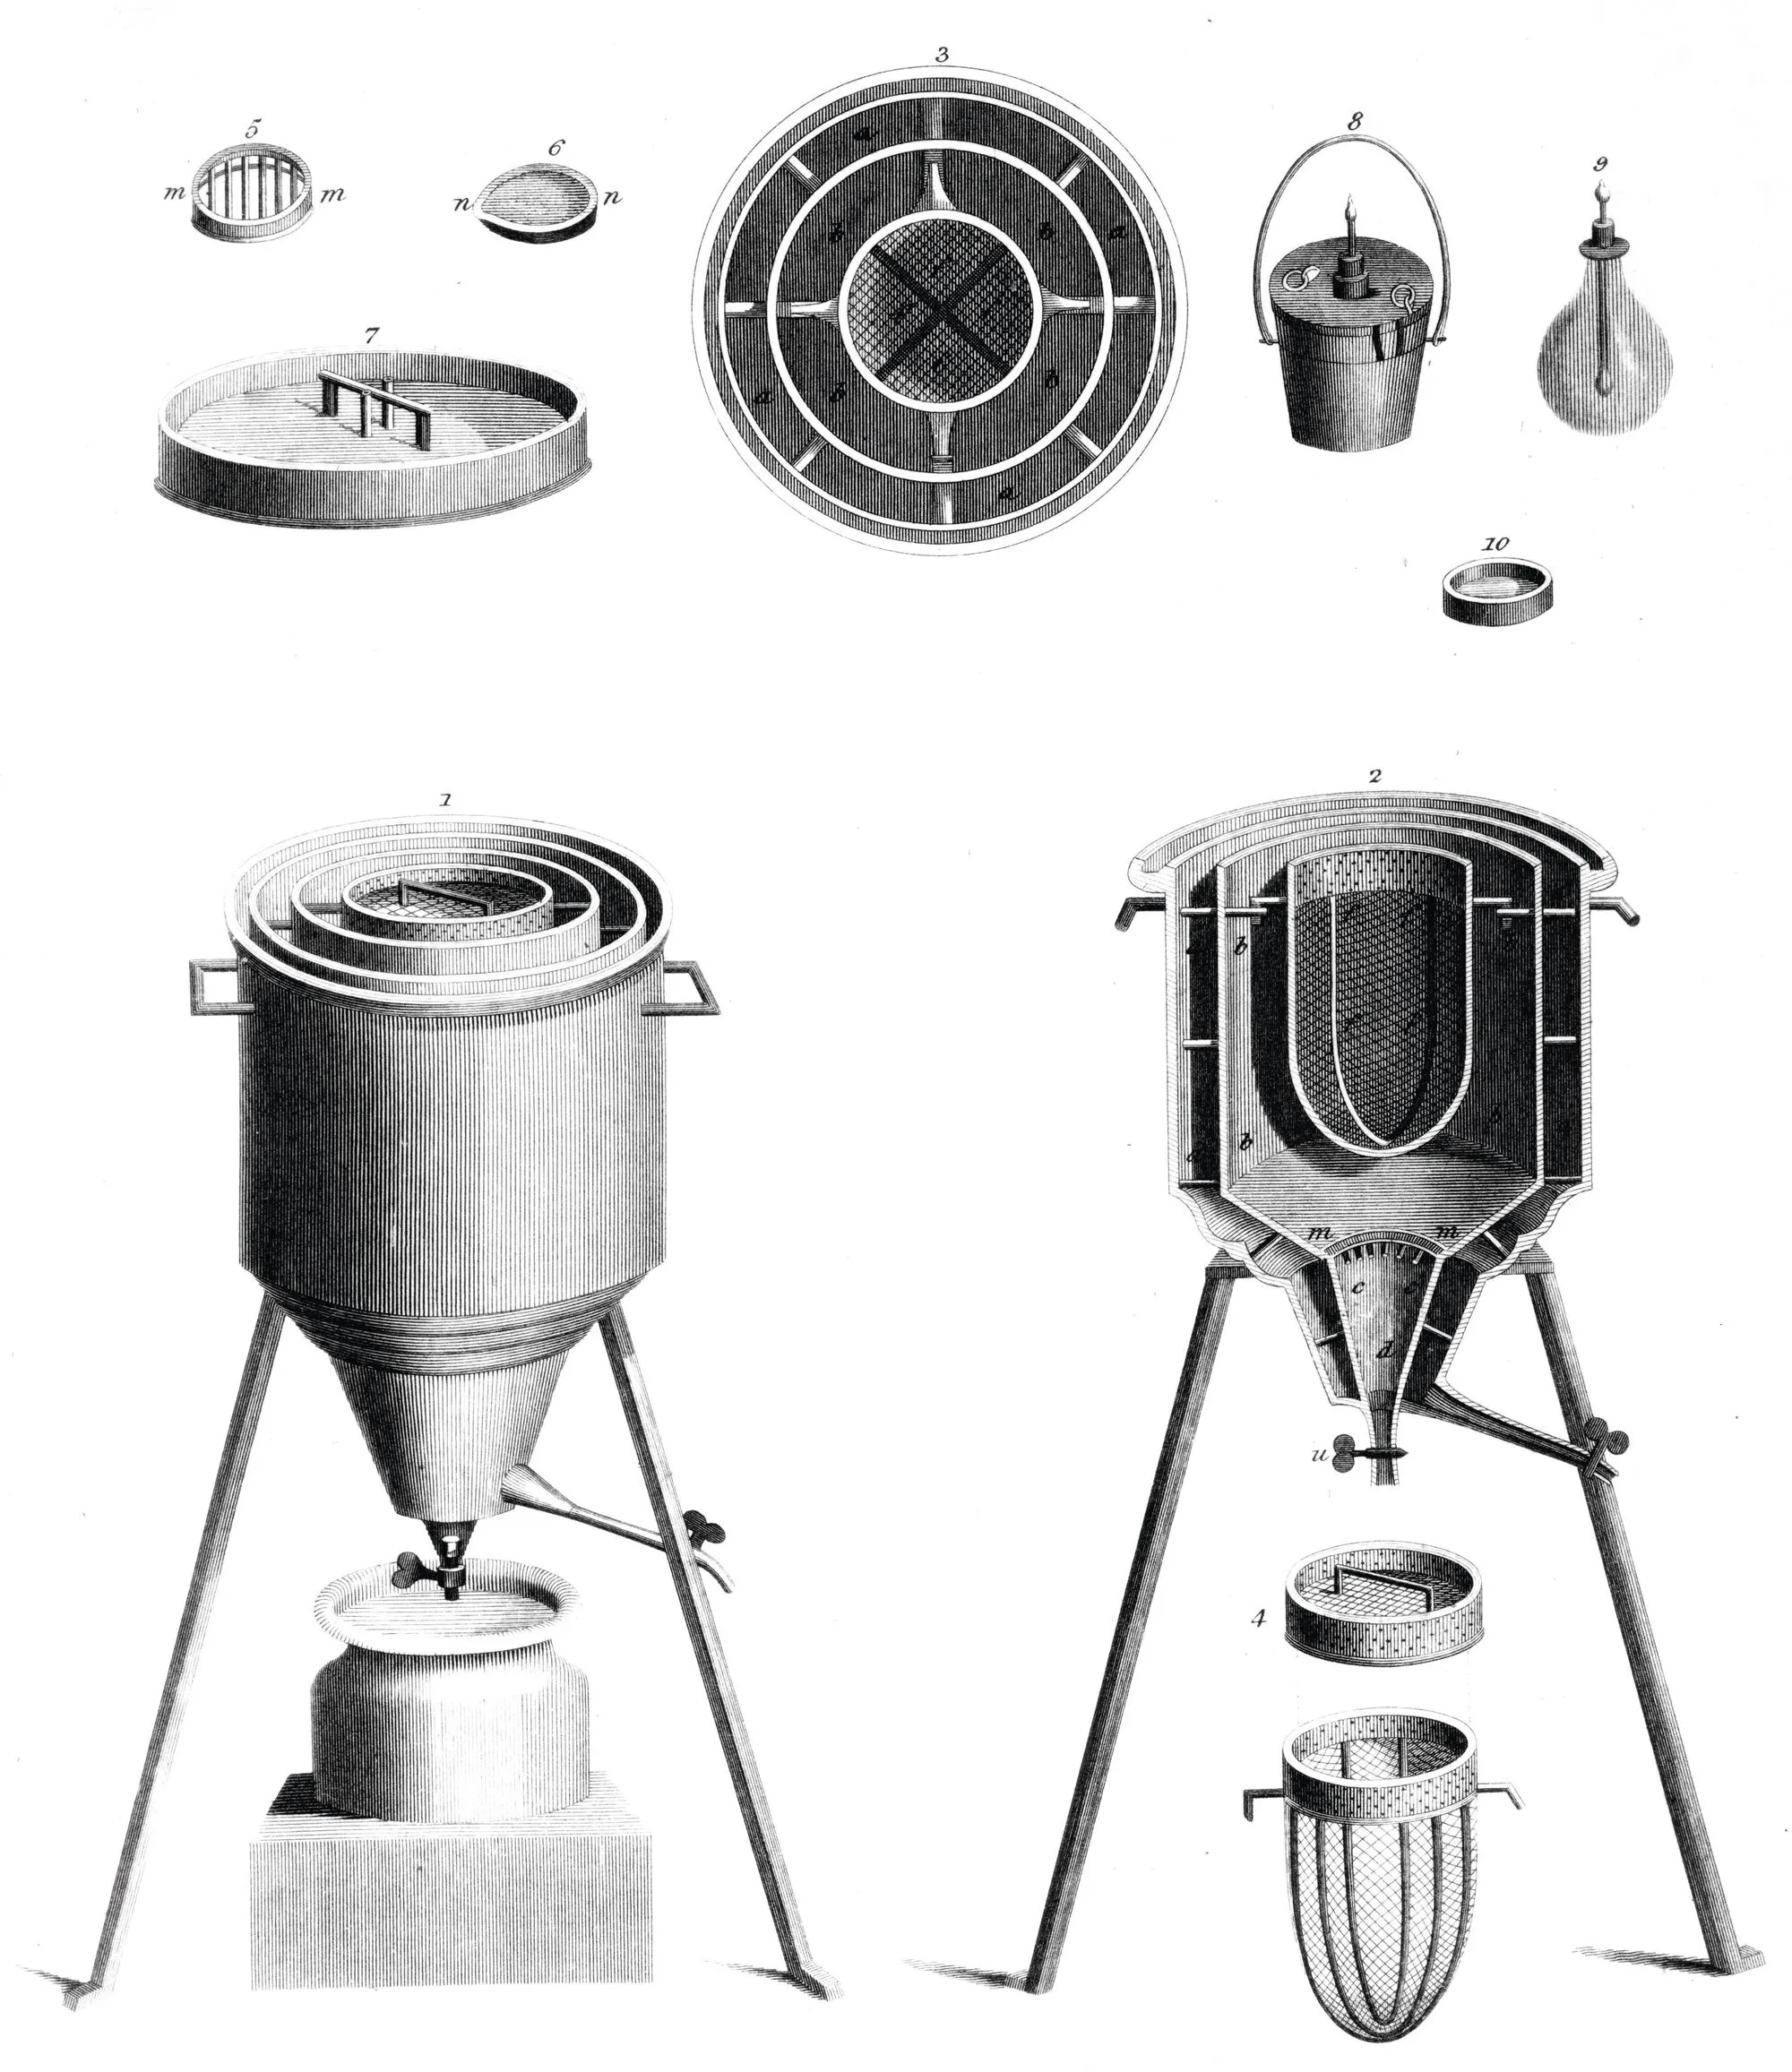 Calorimètre à glace utilisé par Lavoisier et Laplace